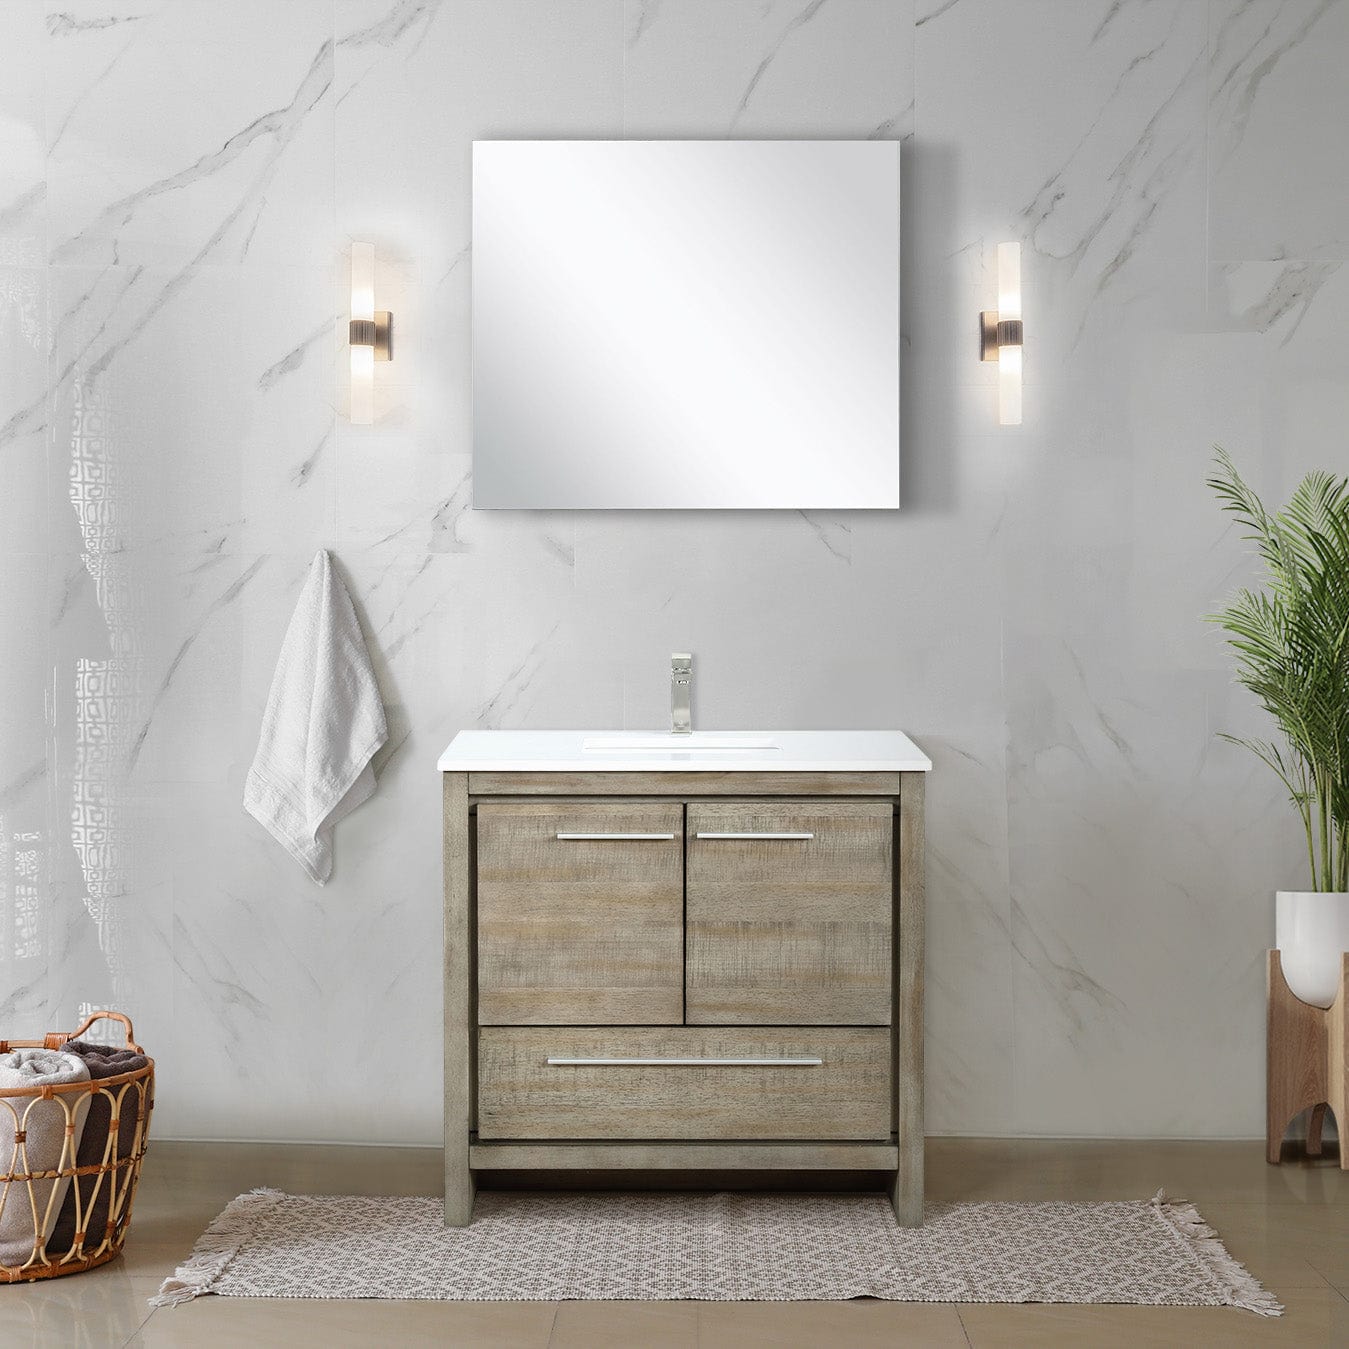 Lexora Bathroom Vanity Cultured Marble / No Faucet / No Mirror Lafarre 36" Rustic Acacia Bathroom Vanity